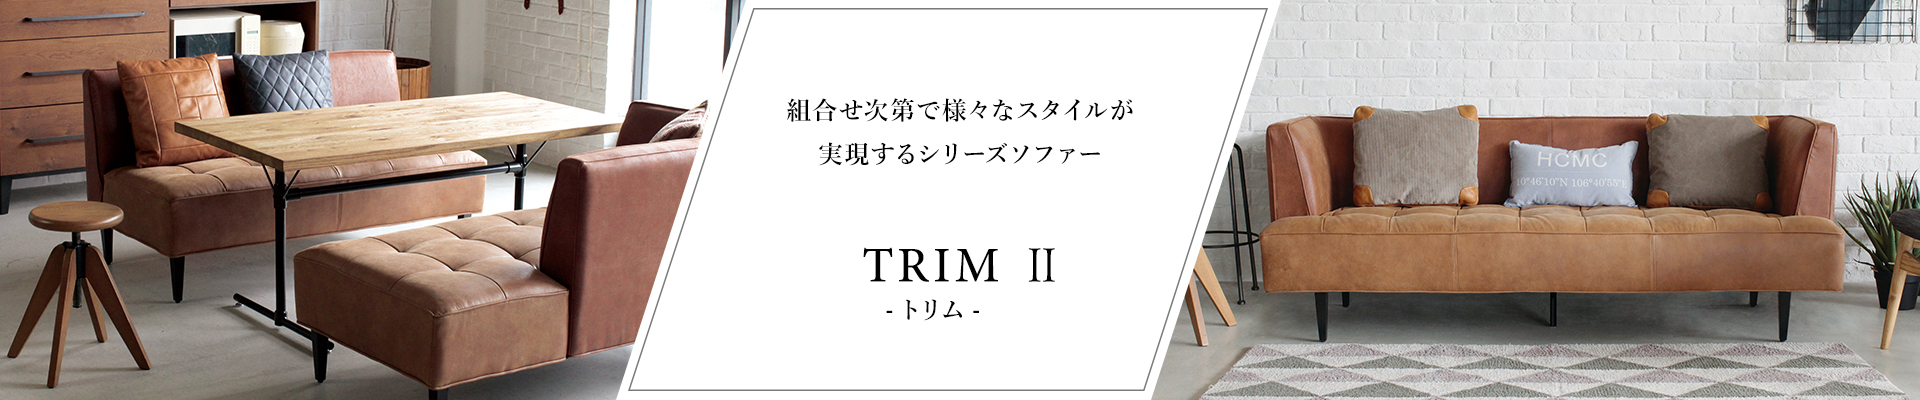 TRIM II トリム ソファー